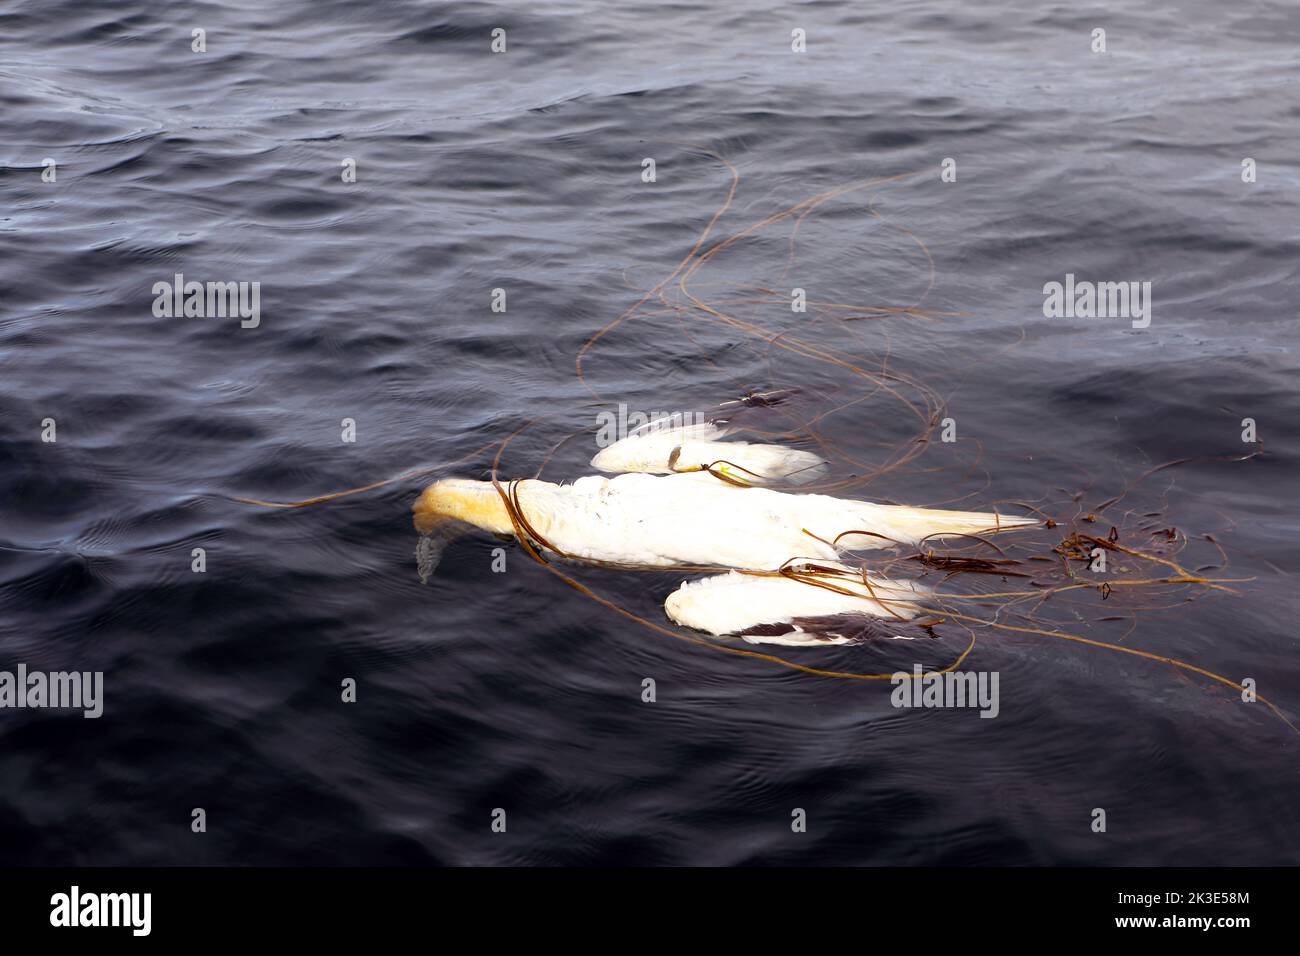 Gantet mort, victime de la grippe aviaire ou de la grippe aviaire, flottant dans la mer emmêlé dans les algues au large de l'île de Mull, en Écosse Banque D'Images